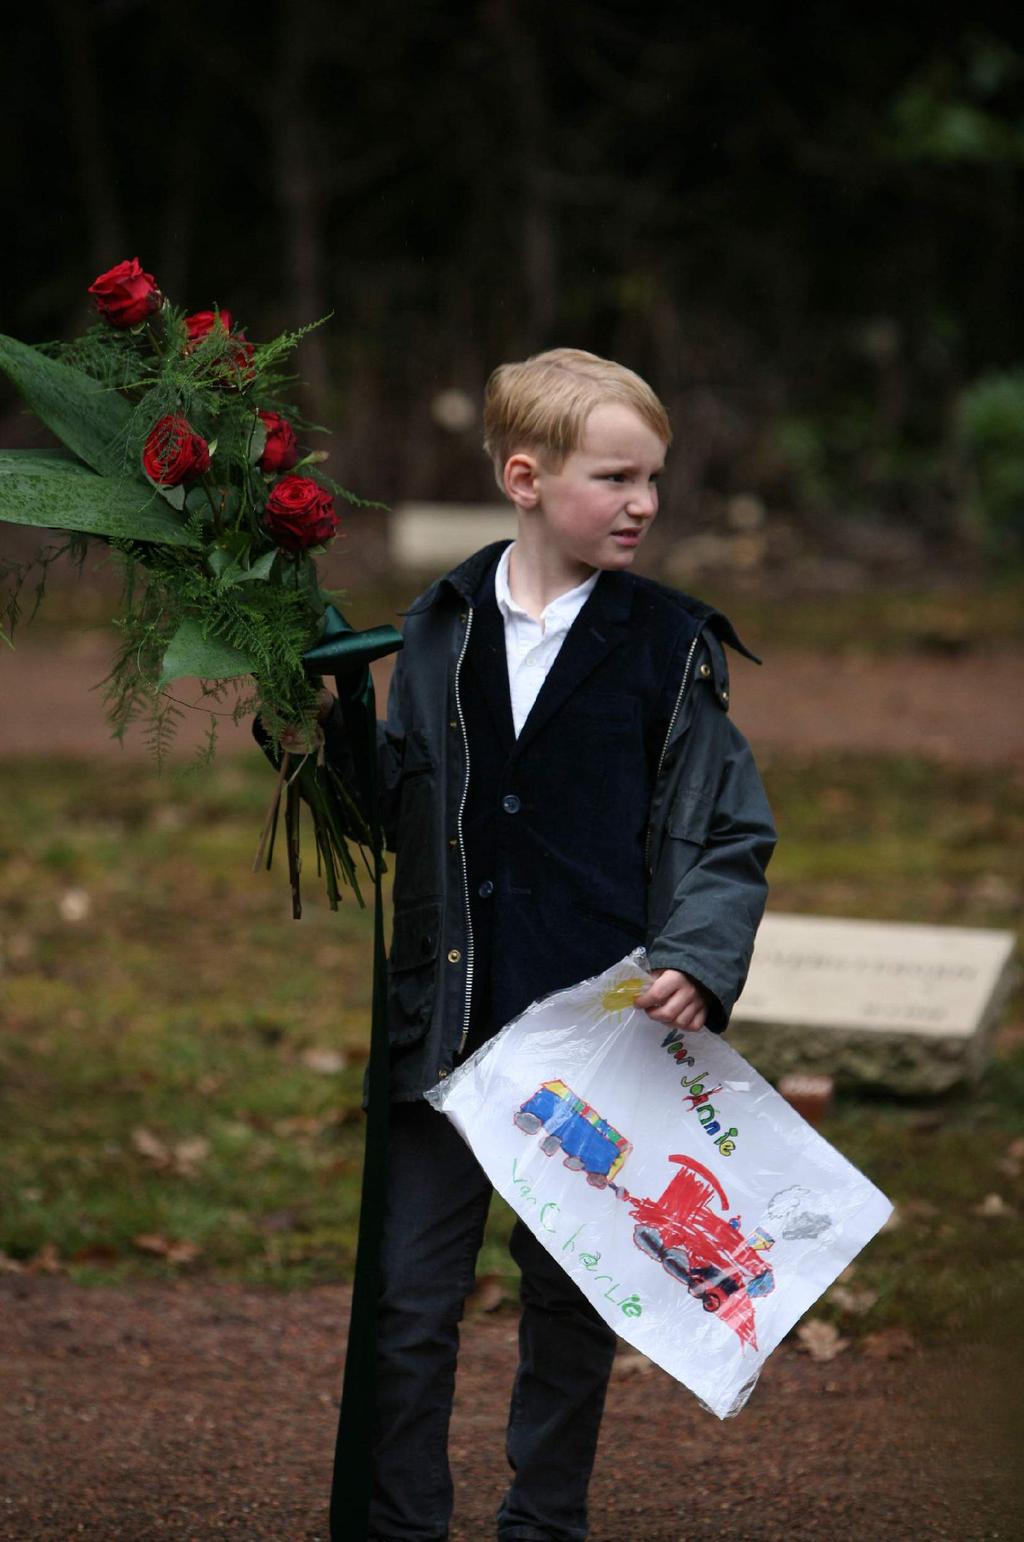 Foto: Charlie Meijer 7 jaar, voor het graf van zijn oud oom Johnny van 6 jaar. Johnny werd doodgeschoten in de Tweede Wereldoorlog, omdat hij Joods was.